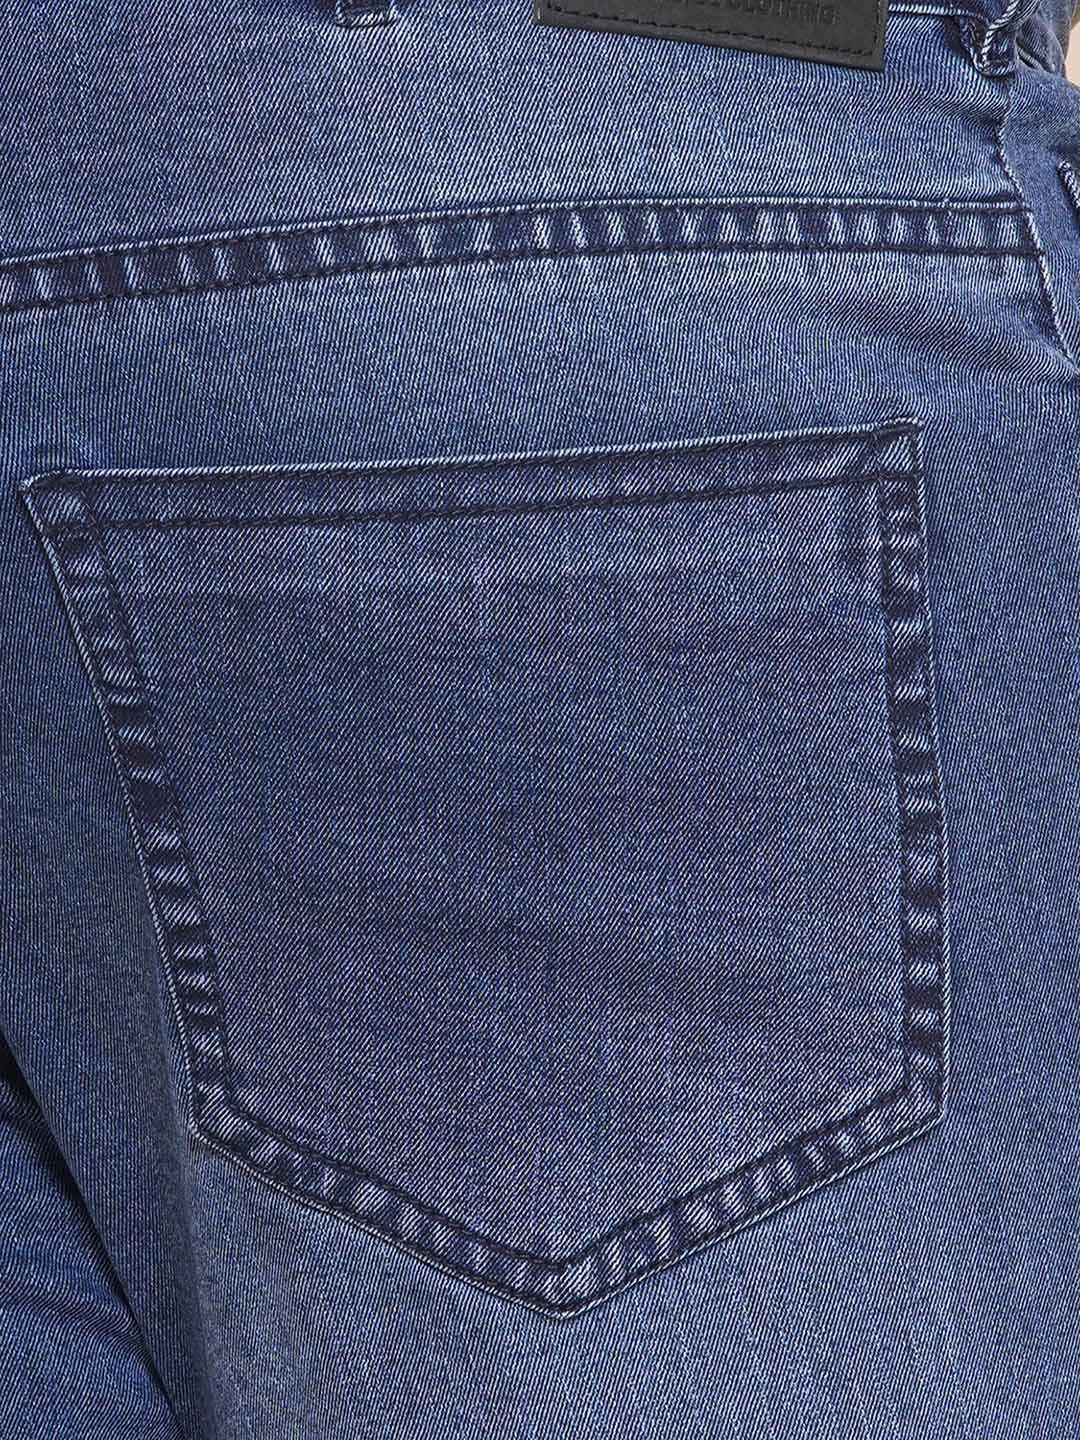 bottomwear/jeans/JPJ12284A/jpj12284a-2.jpg